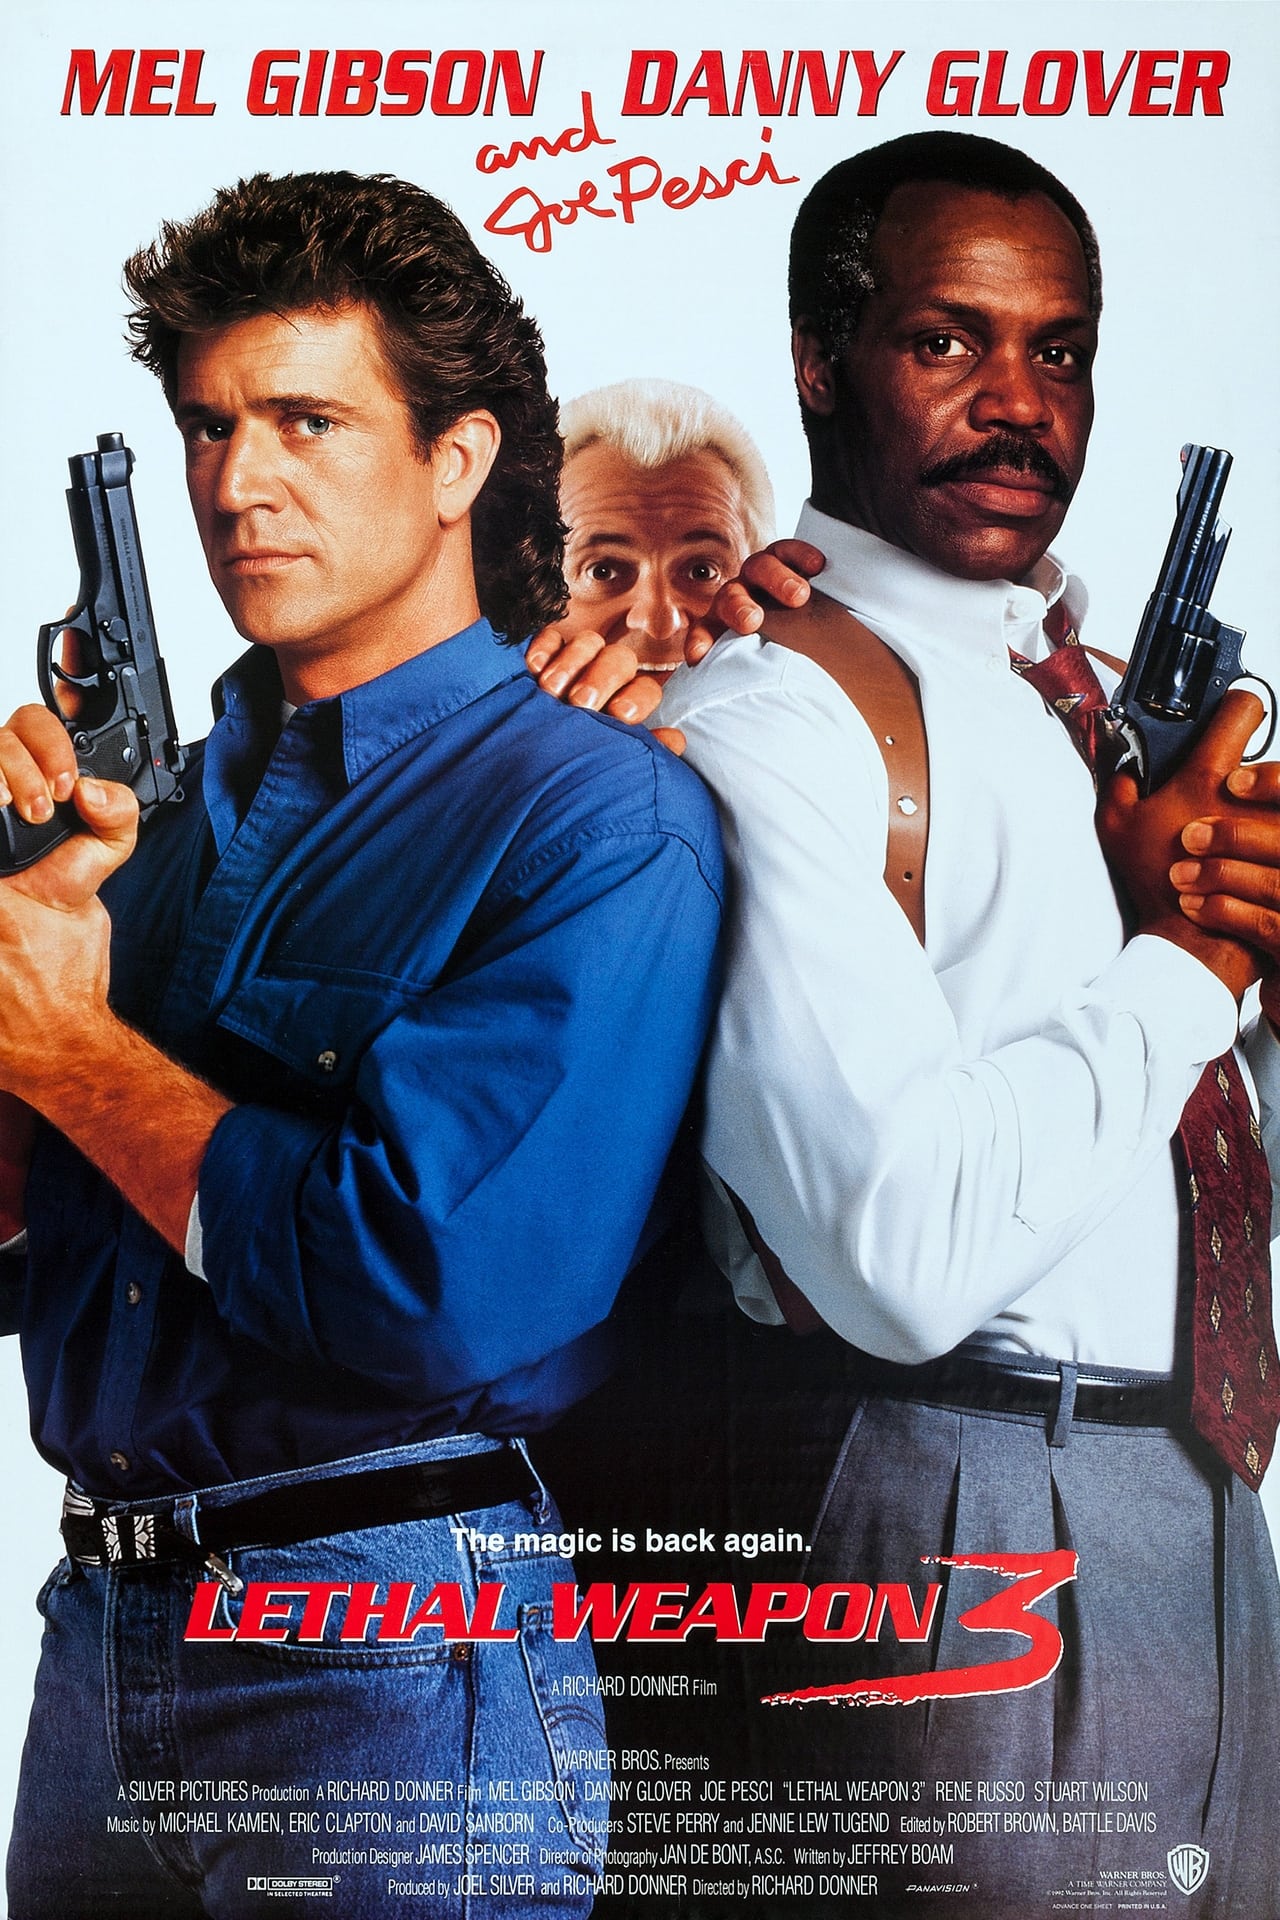 EN - Lethal Weapon 3 (1992) JOE PESCI